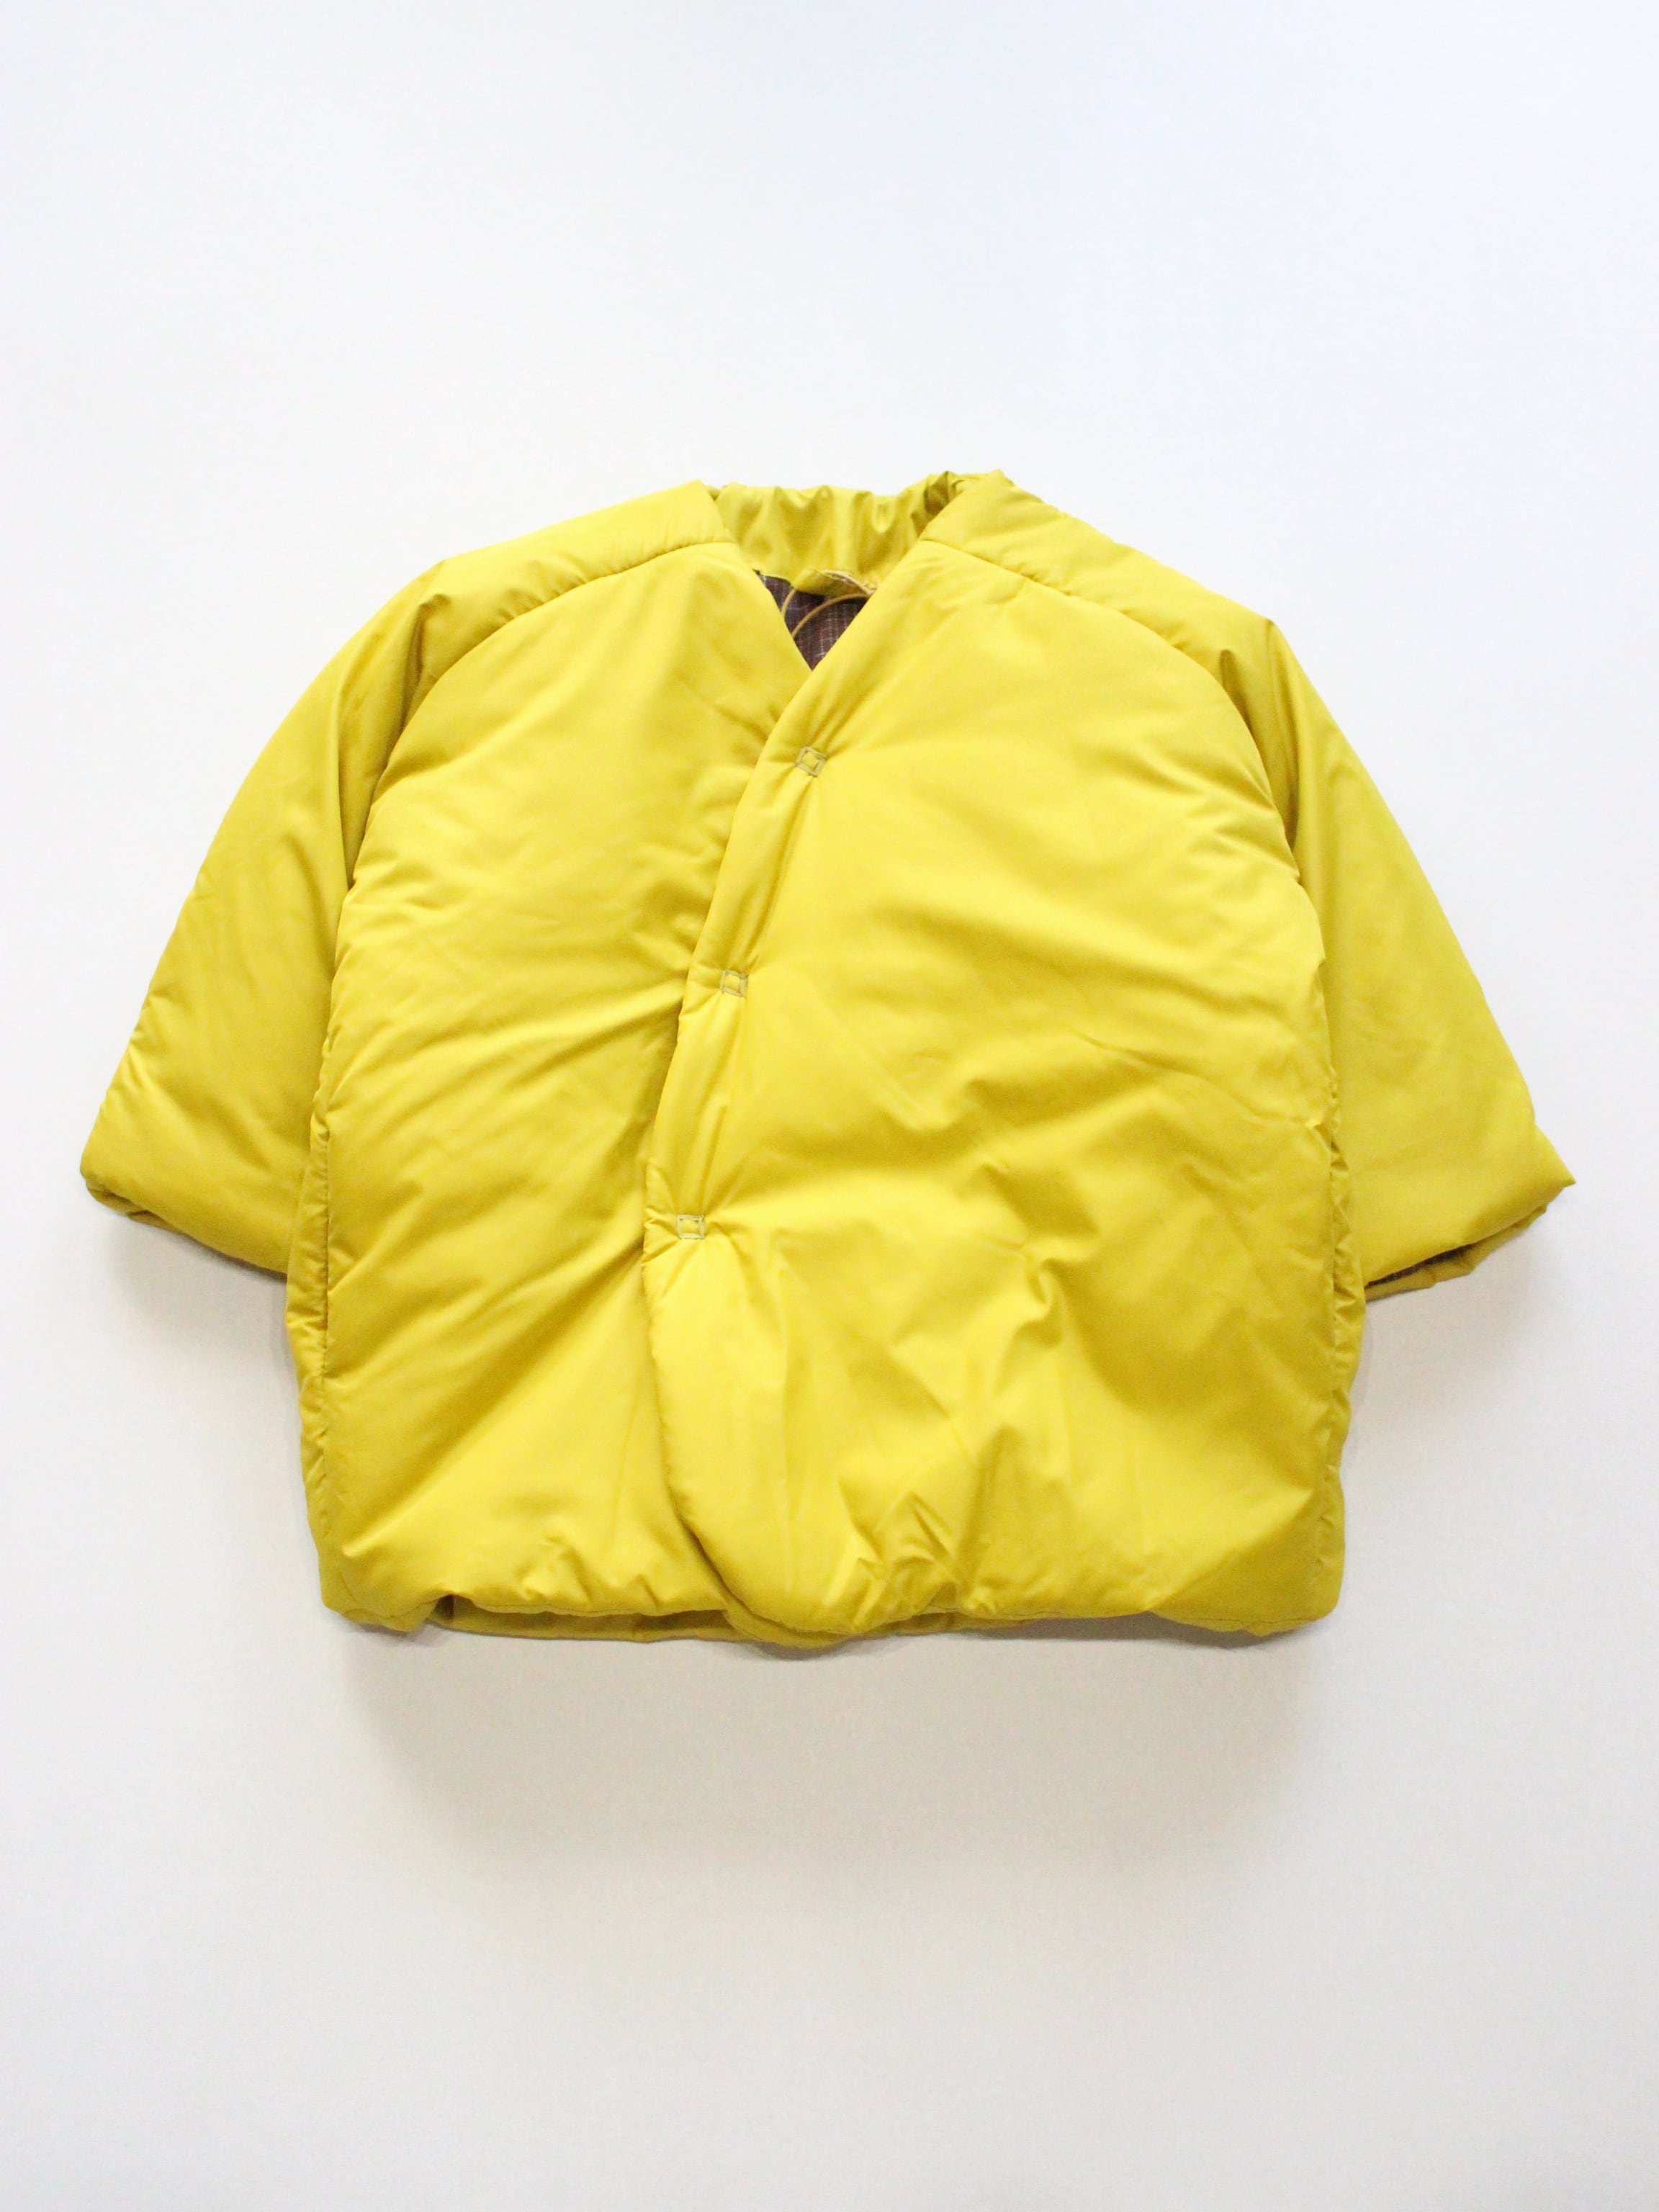 HELLO LUPO Kimono Coat Sporty - Giallo | RESONASON